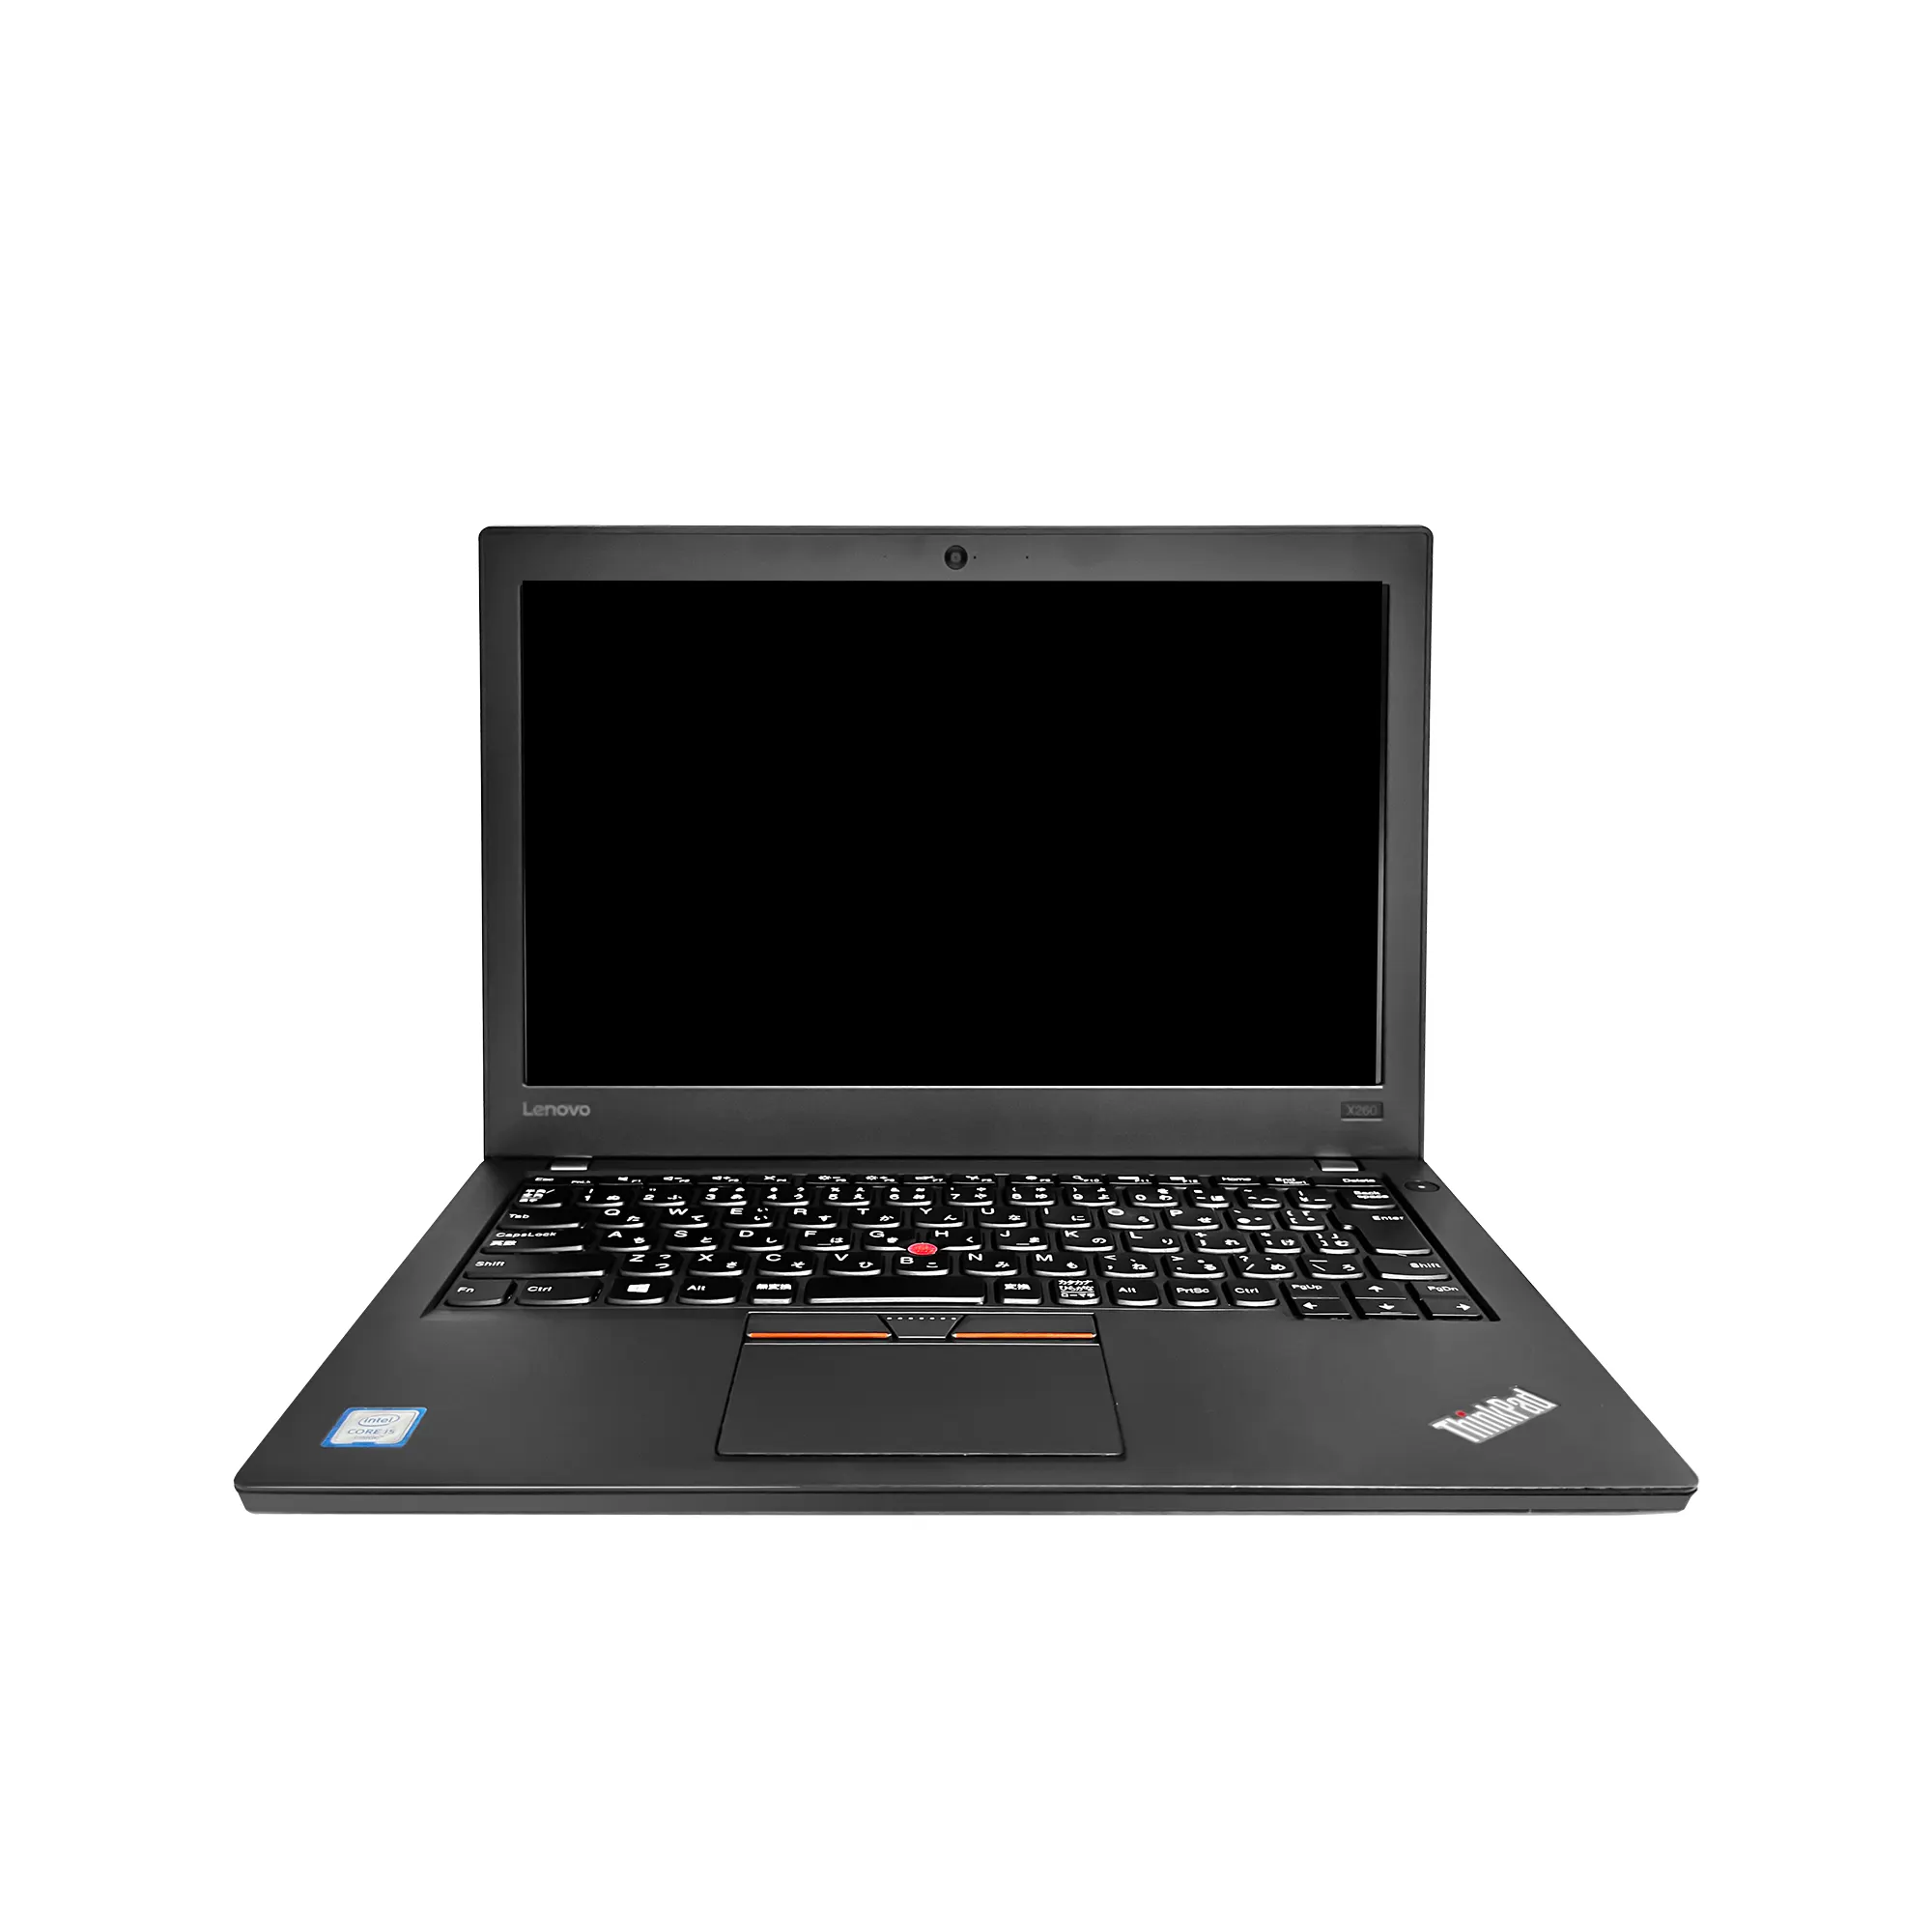 12.5 인치 i5 6 번째 8GB 사용 저렴한 가격 lenovo 노트북 PC lenov 노트북 인텔 12.5 인치 코어 i5 6 번째 컴퓨터 ssd hdd lenovo 노트북